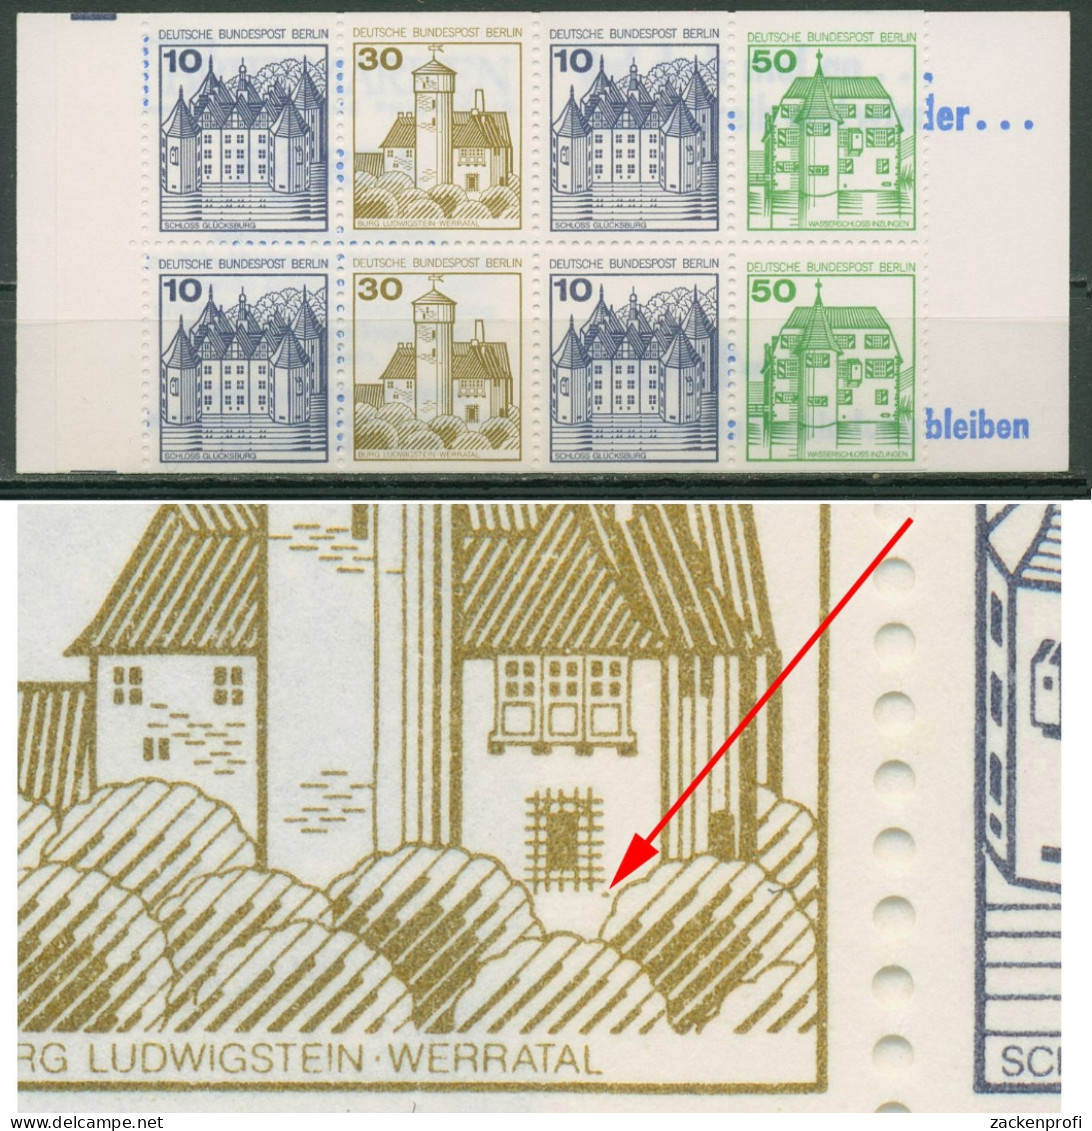 Berlin Markenheftchen 1980 B & S Mit Plattenfehler MH 11 G PF II Postfrisch - Errors & Oddities